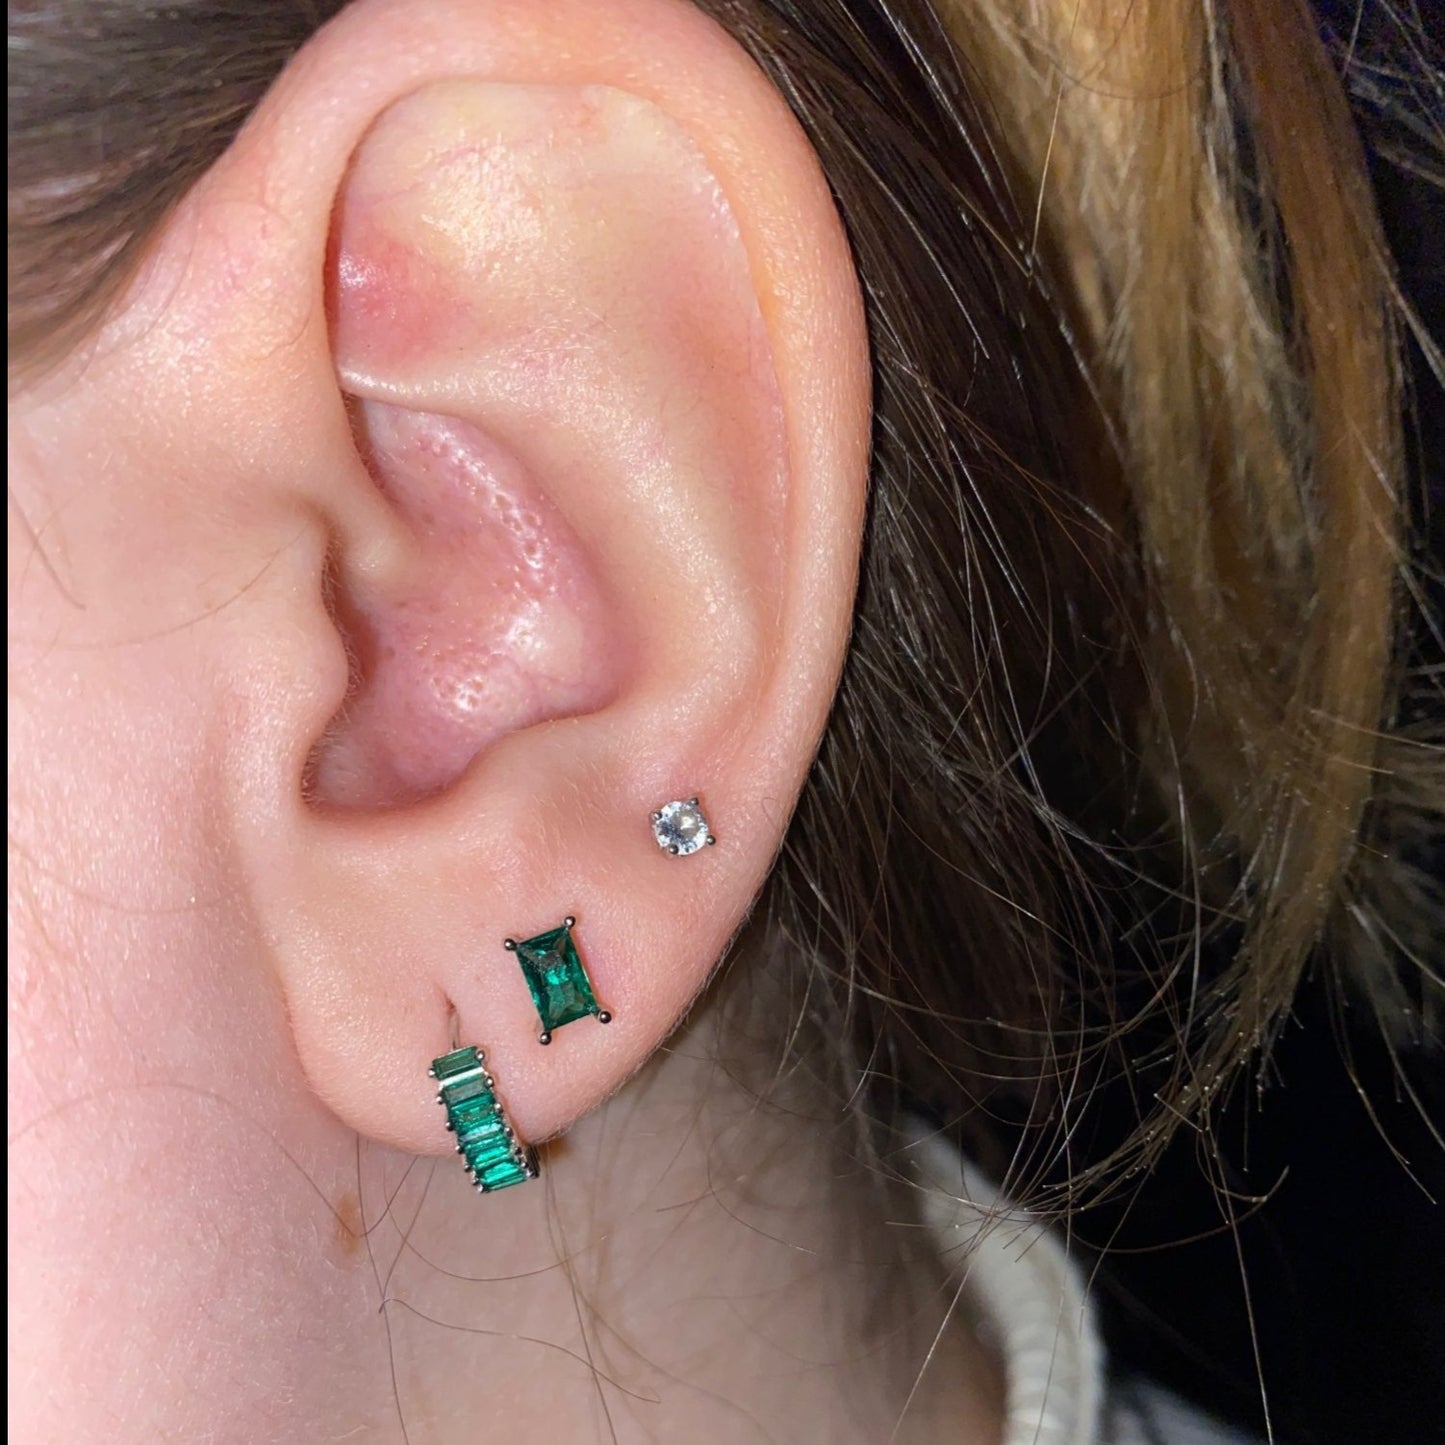 A model wearing green gemstone earrings.